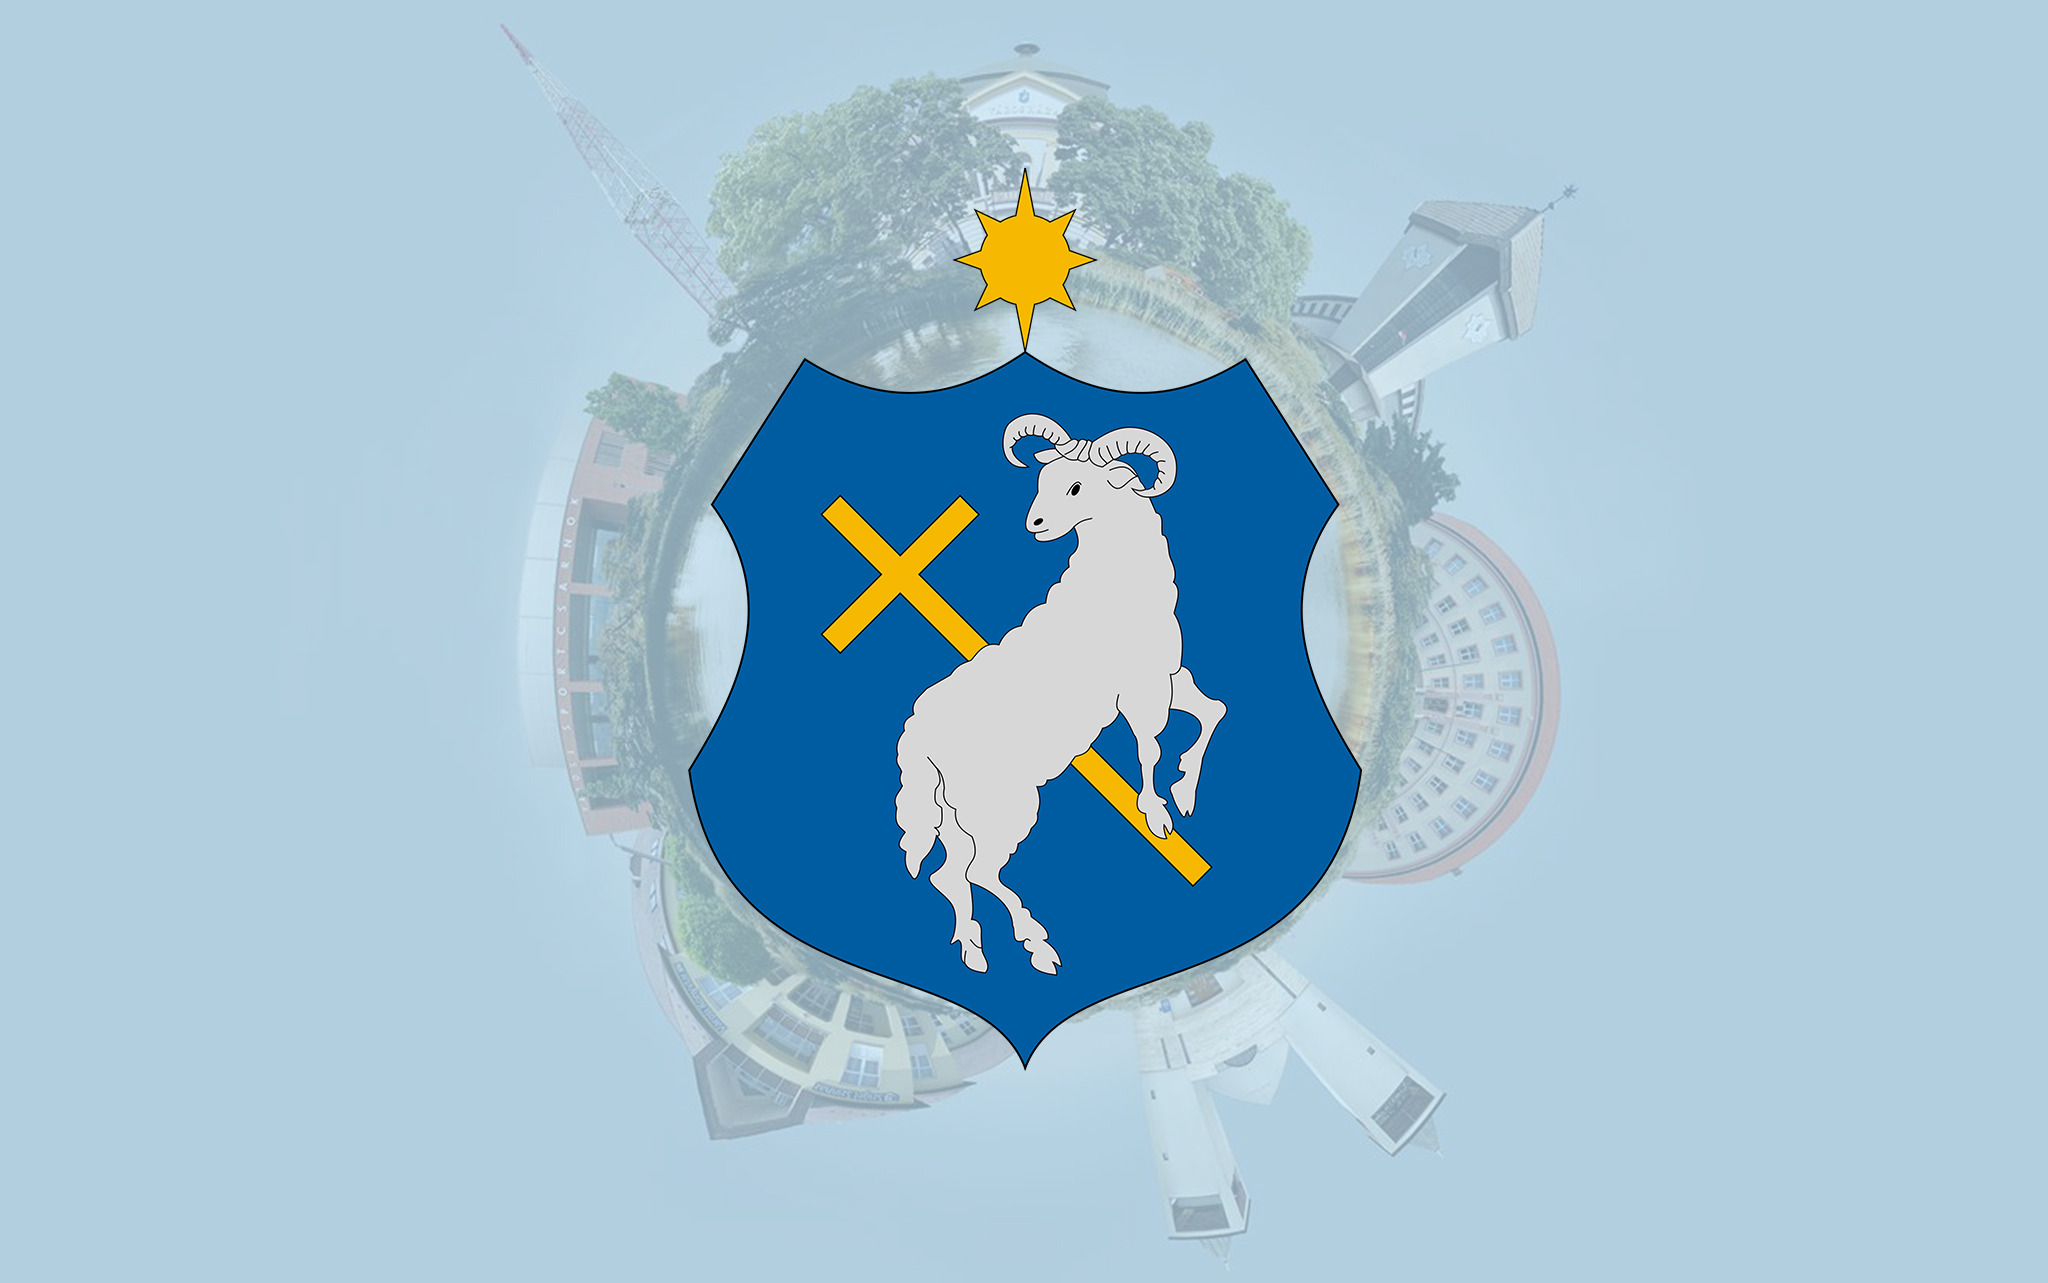 Szigetszentmiklós Város Önkormányzata Képviselő-testületének 2022. március 3. napján megtartott rendes, nyilvános ülése.